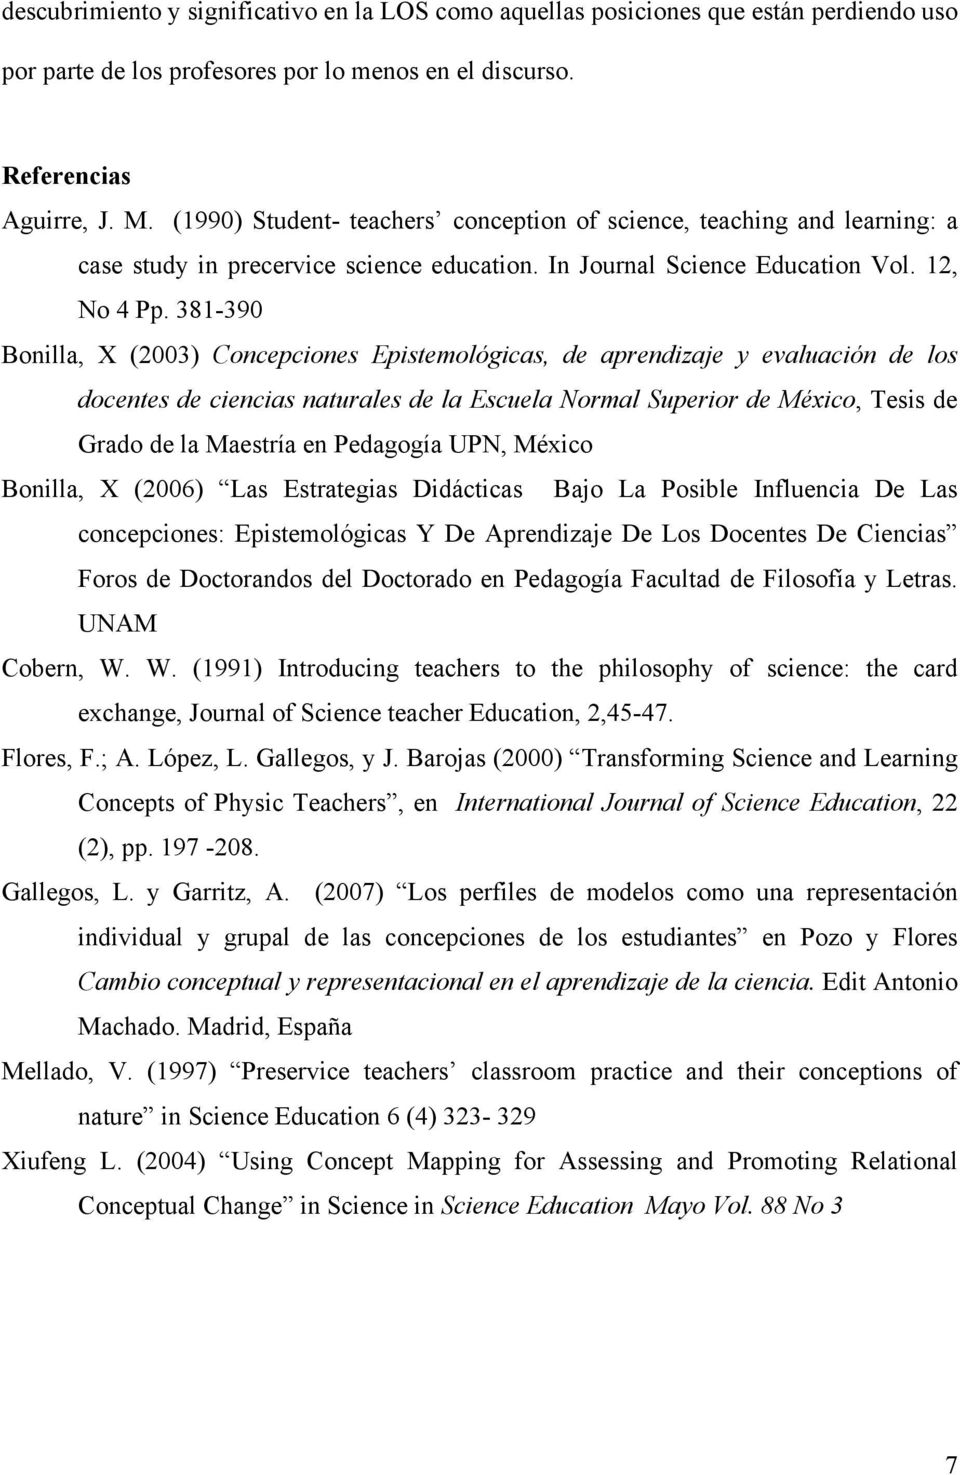 381-390 Bonilla, X (2003) Concepciones Epistemológicas, de aprendizaje y evaluación de los docentes de ciencias naturales de la Escuela Normal Superior de México, Tesis de Grado de la Maestría en